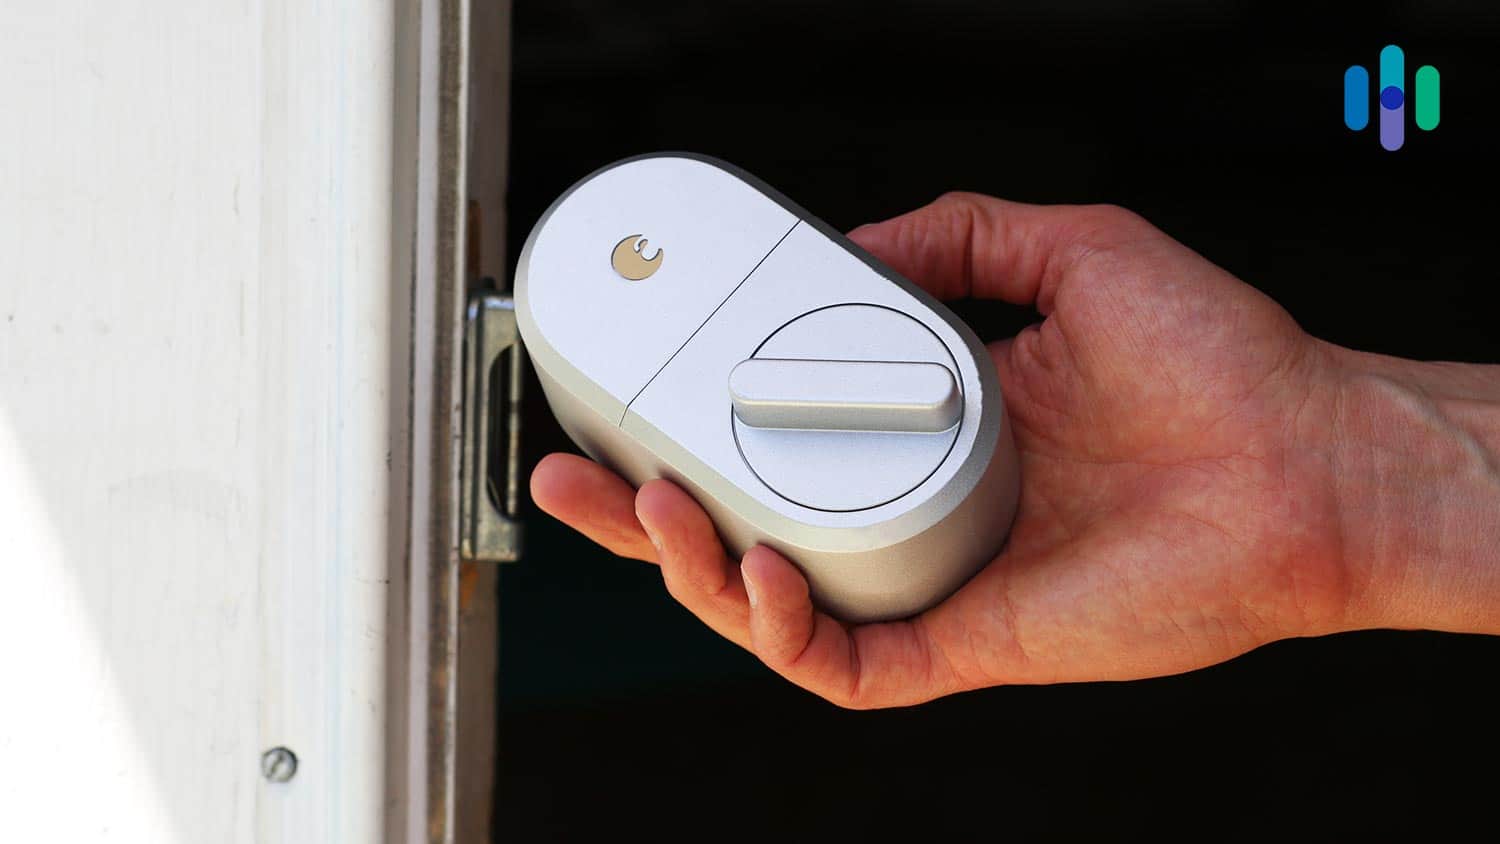 Smart Door Lock Installation and Services